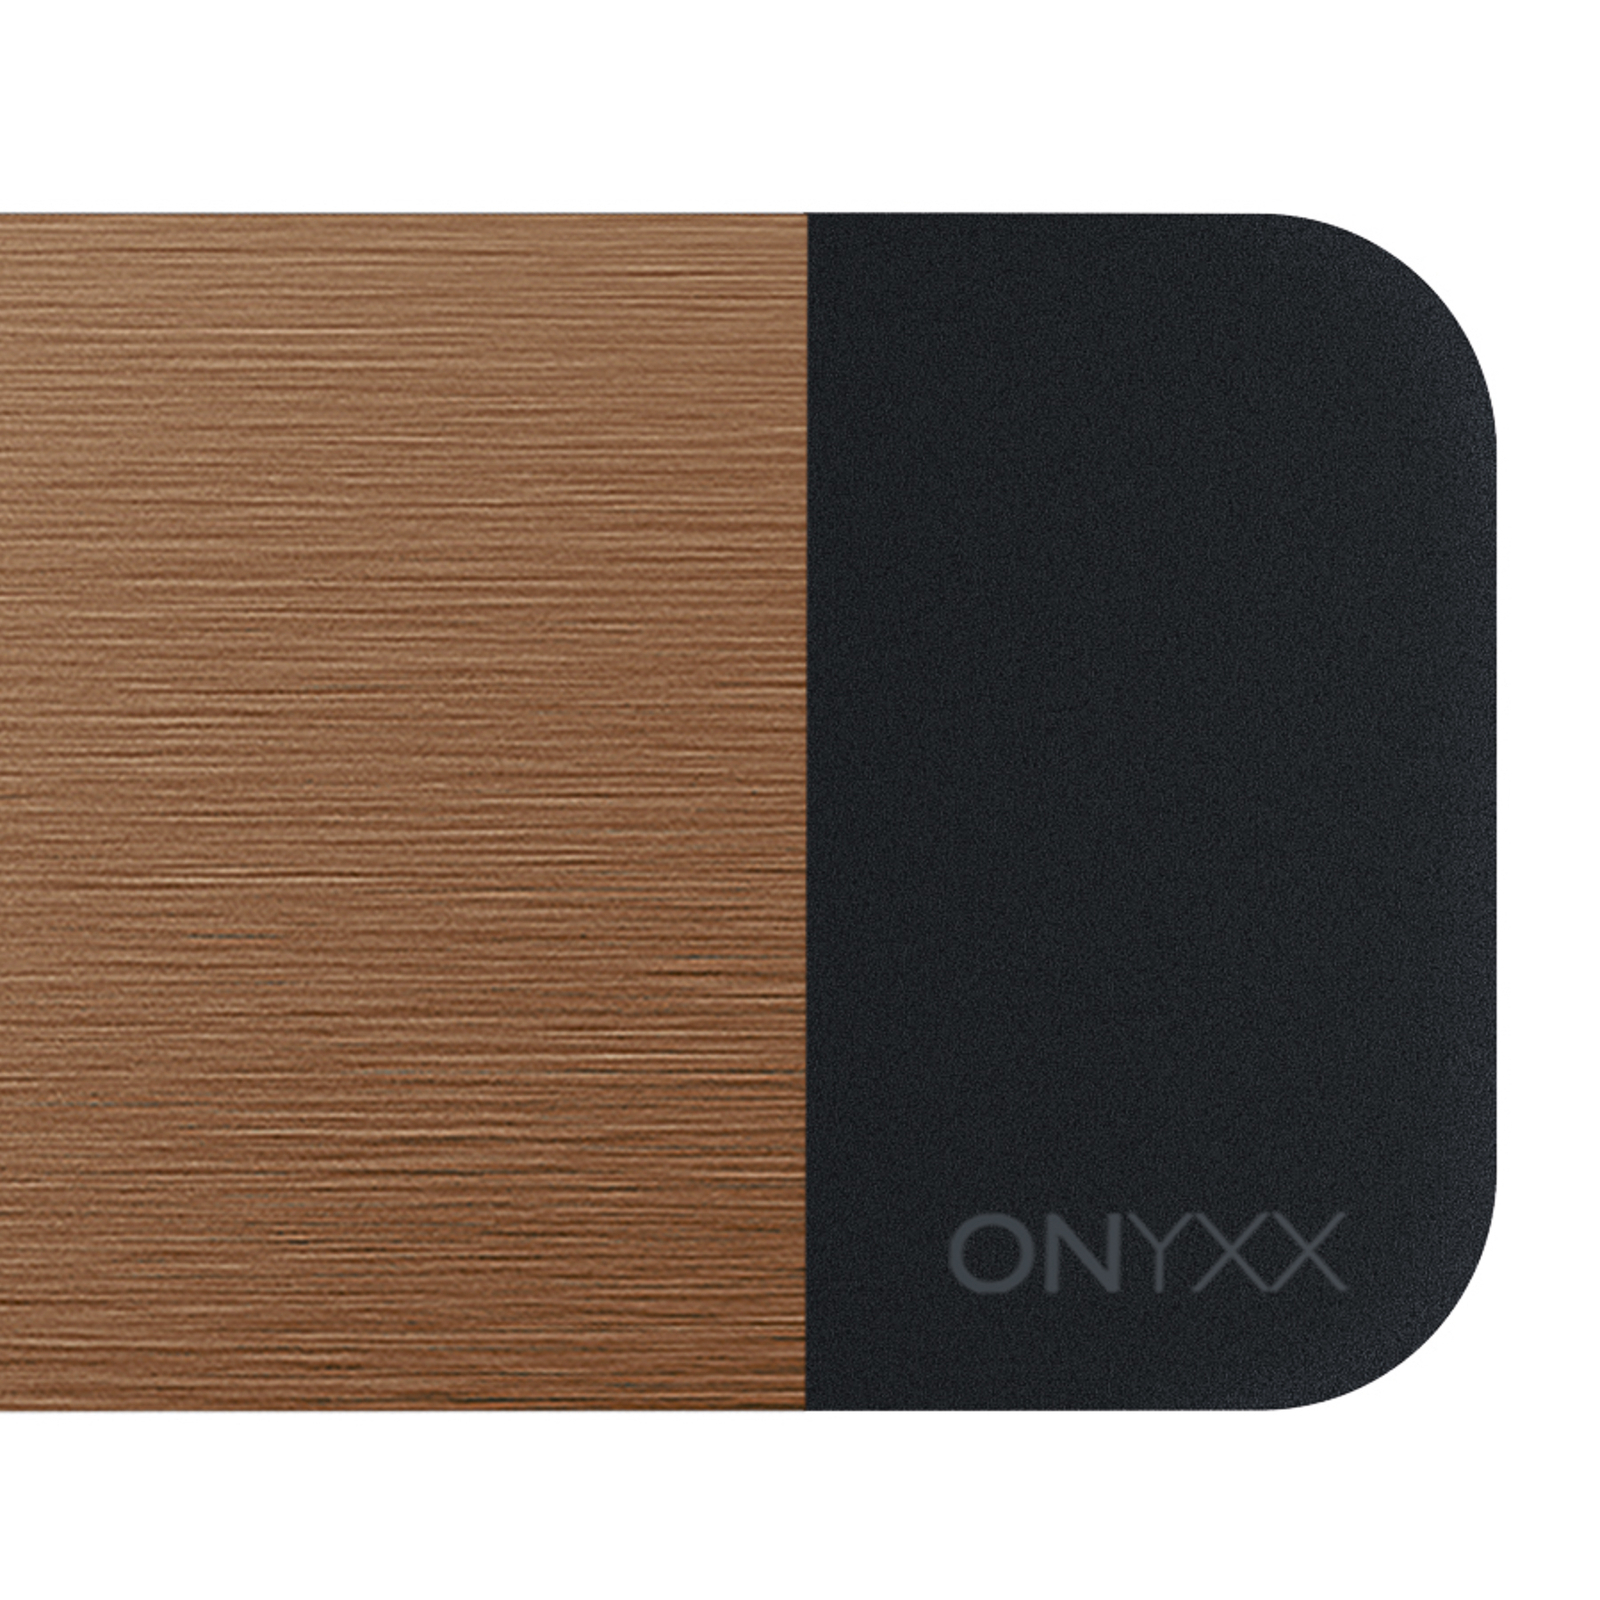 GRIMMEISEN Onyxx Linea Pro Pendel bronze/schwarz